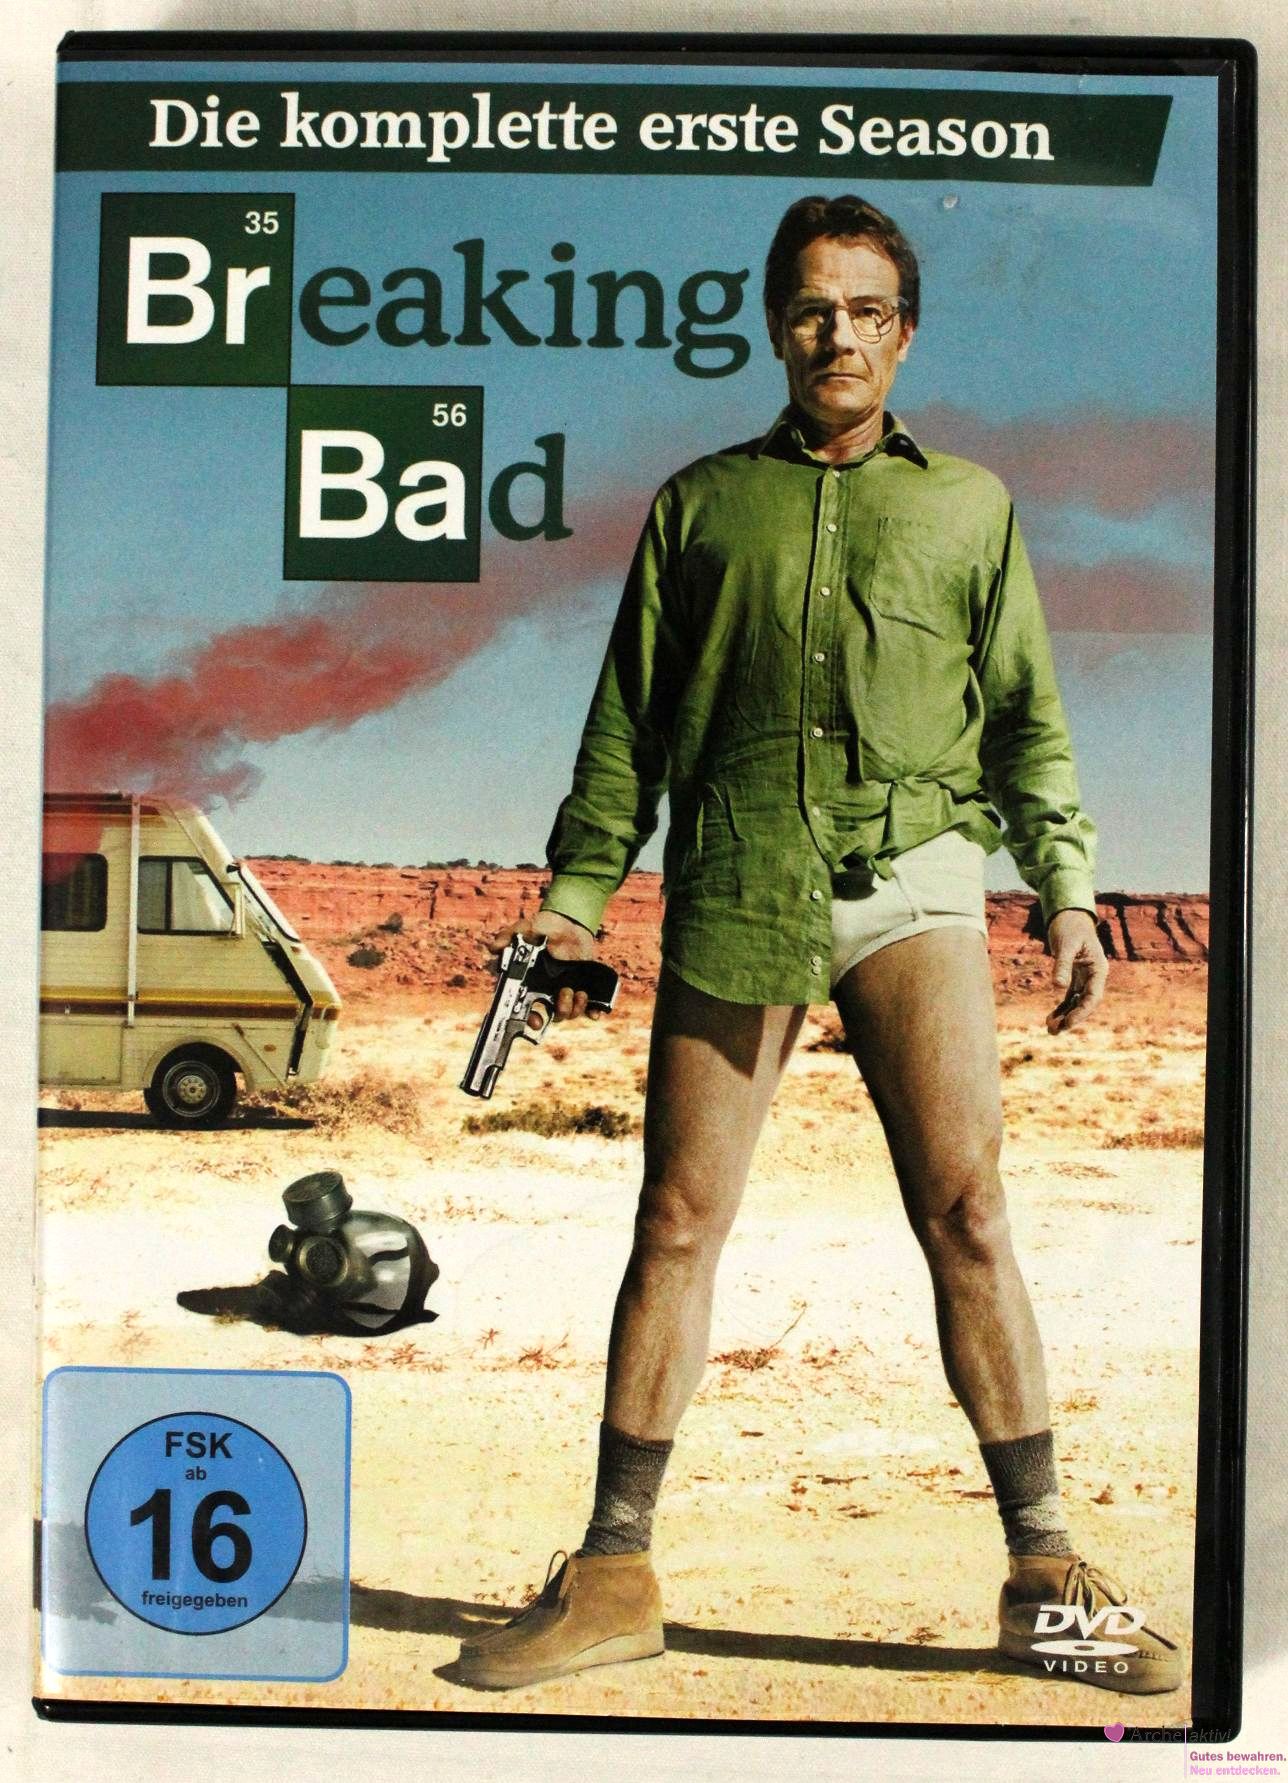 Breaking Bad - die komplette erste Season, auf DVD gebr.